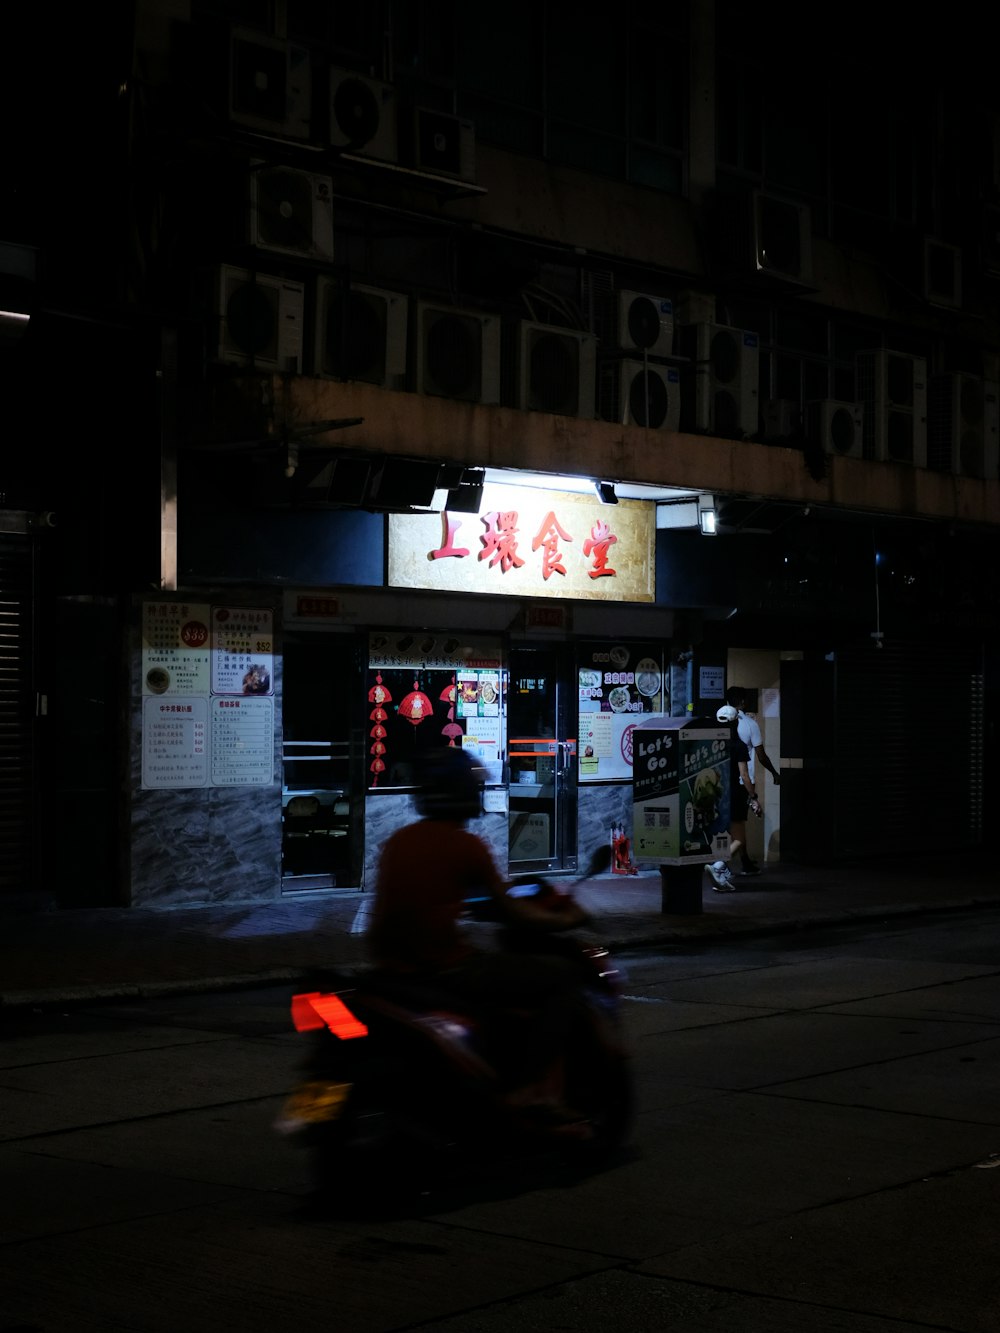 Un homme conduisant une moto dans une rue la nuit